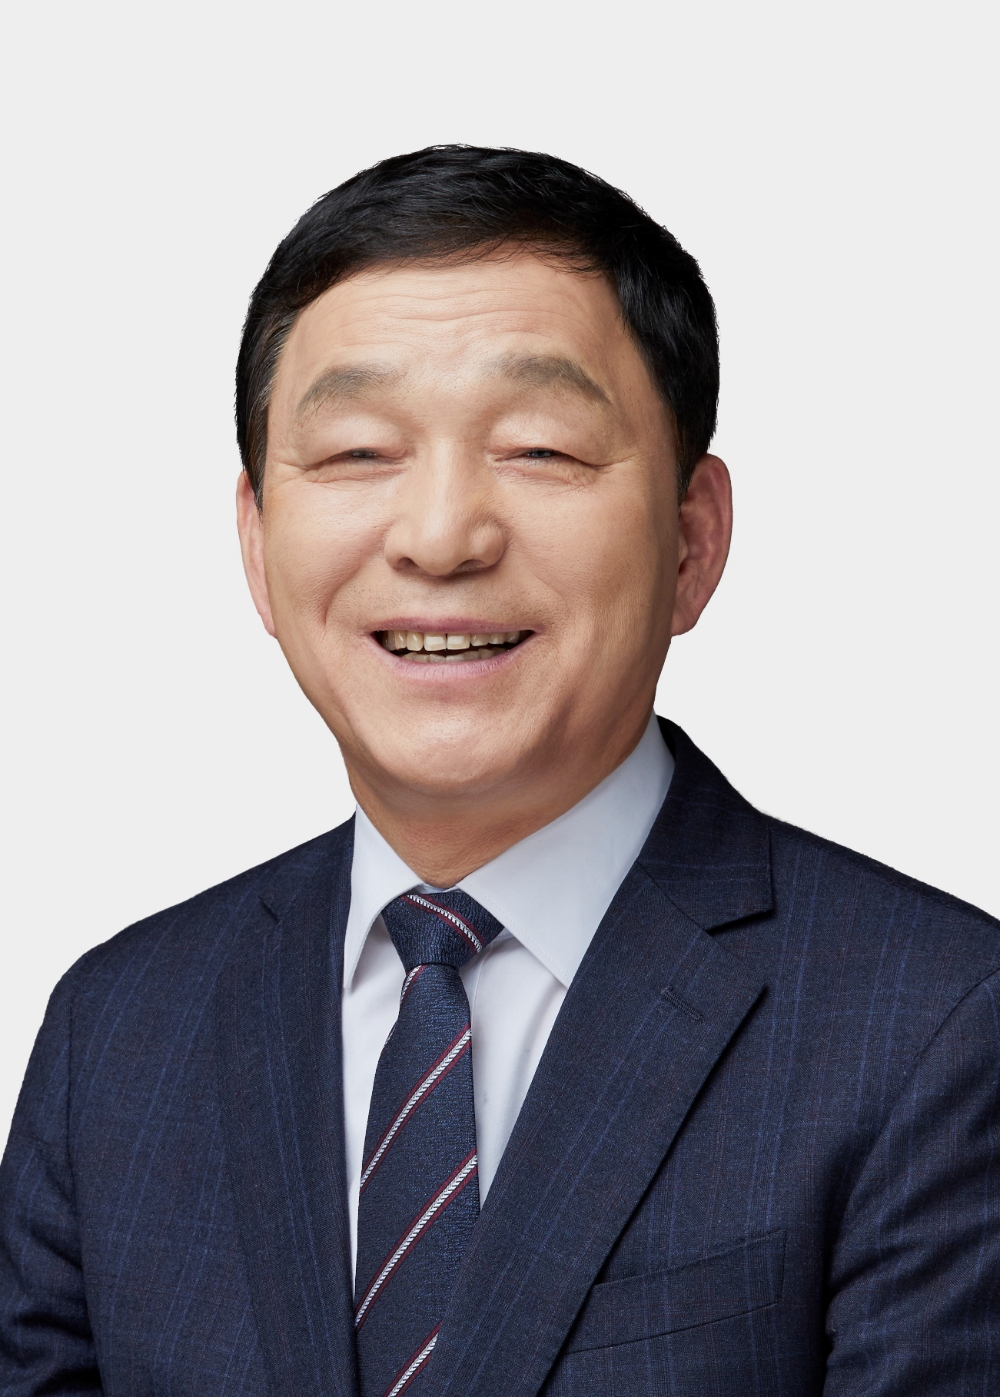 김철민 의원, 청소년 게임도박중독 예방교육법 대표발의